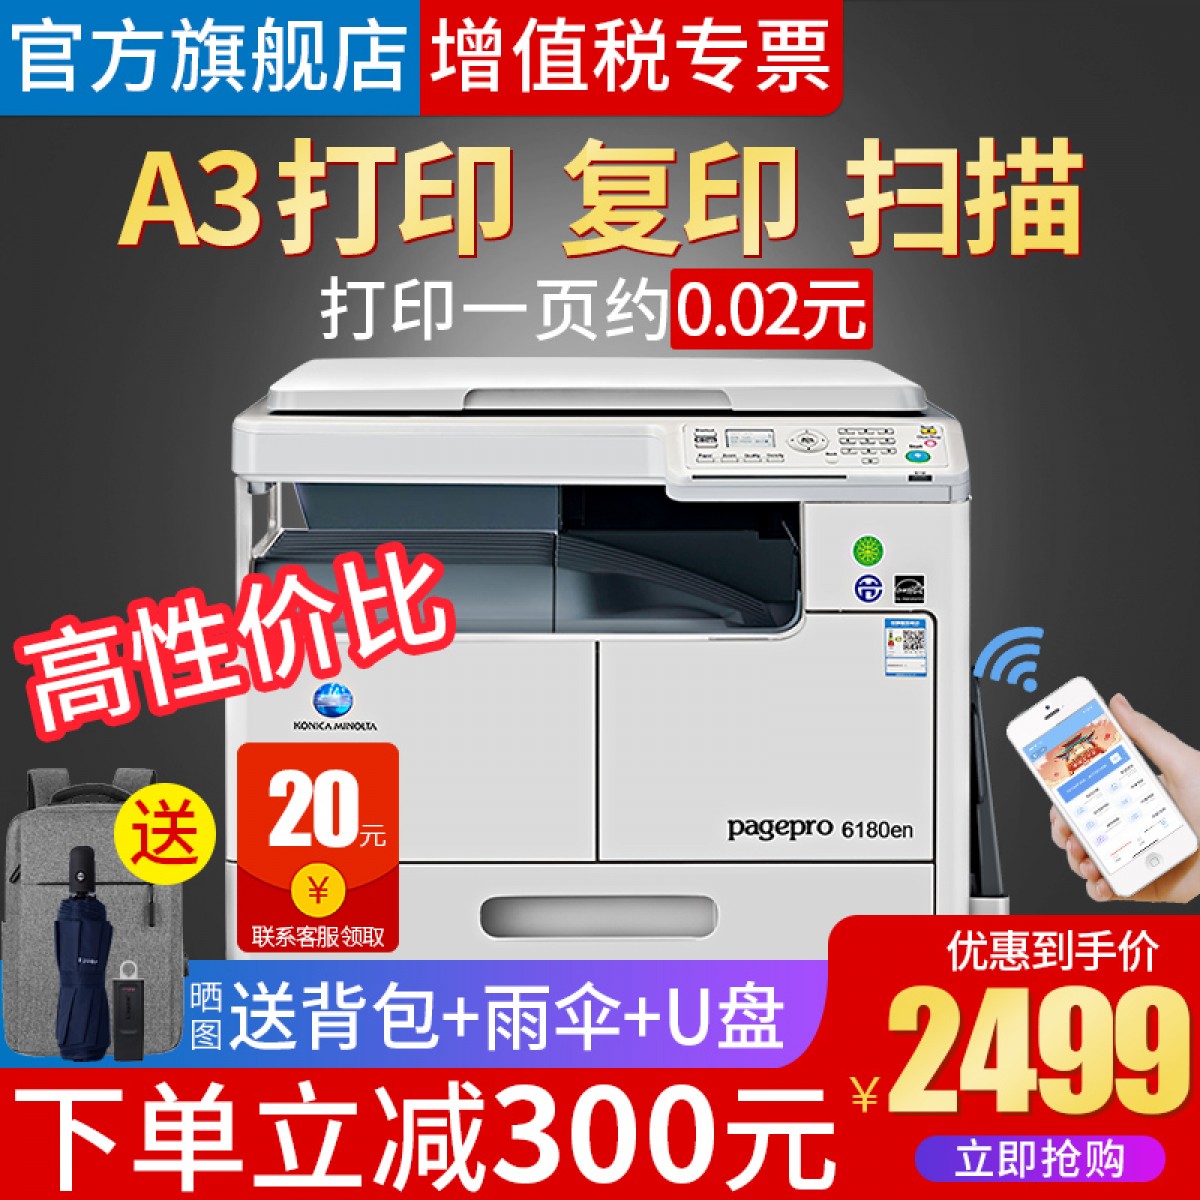 柯美185en 复印机 A3激光黑白办公商用扫描6180en多功能复合机a4打印复印一体机